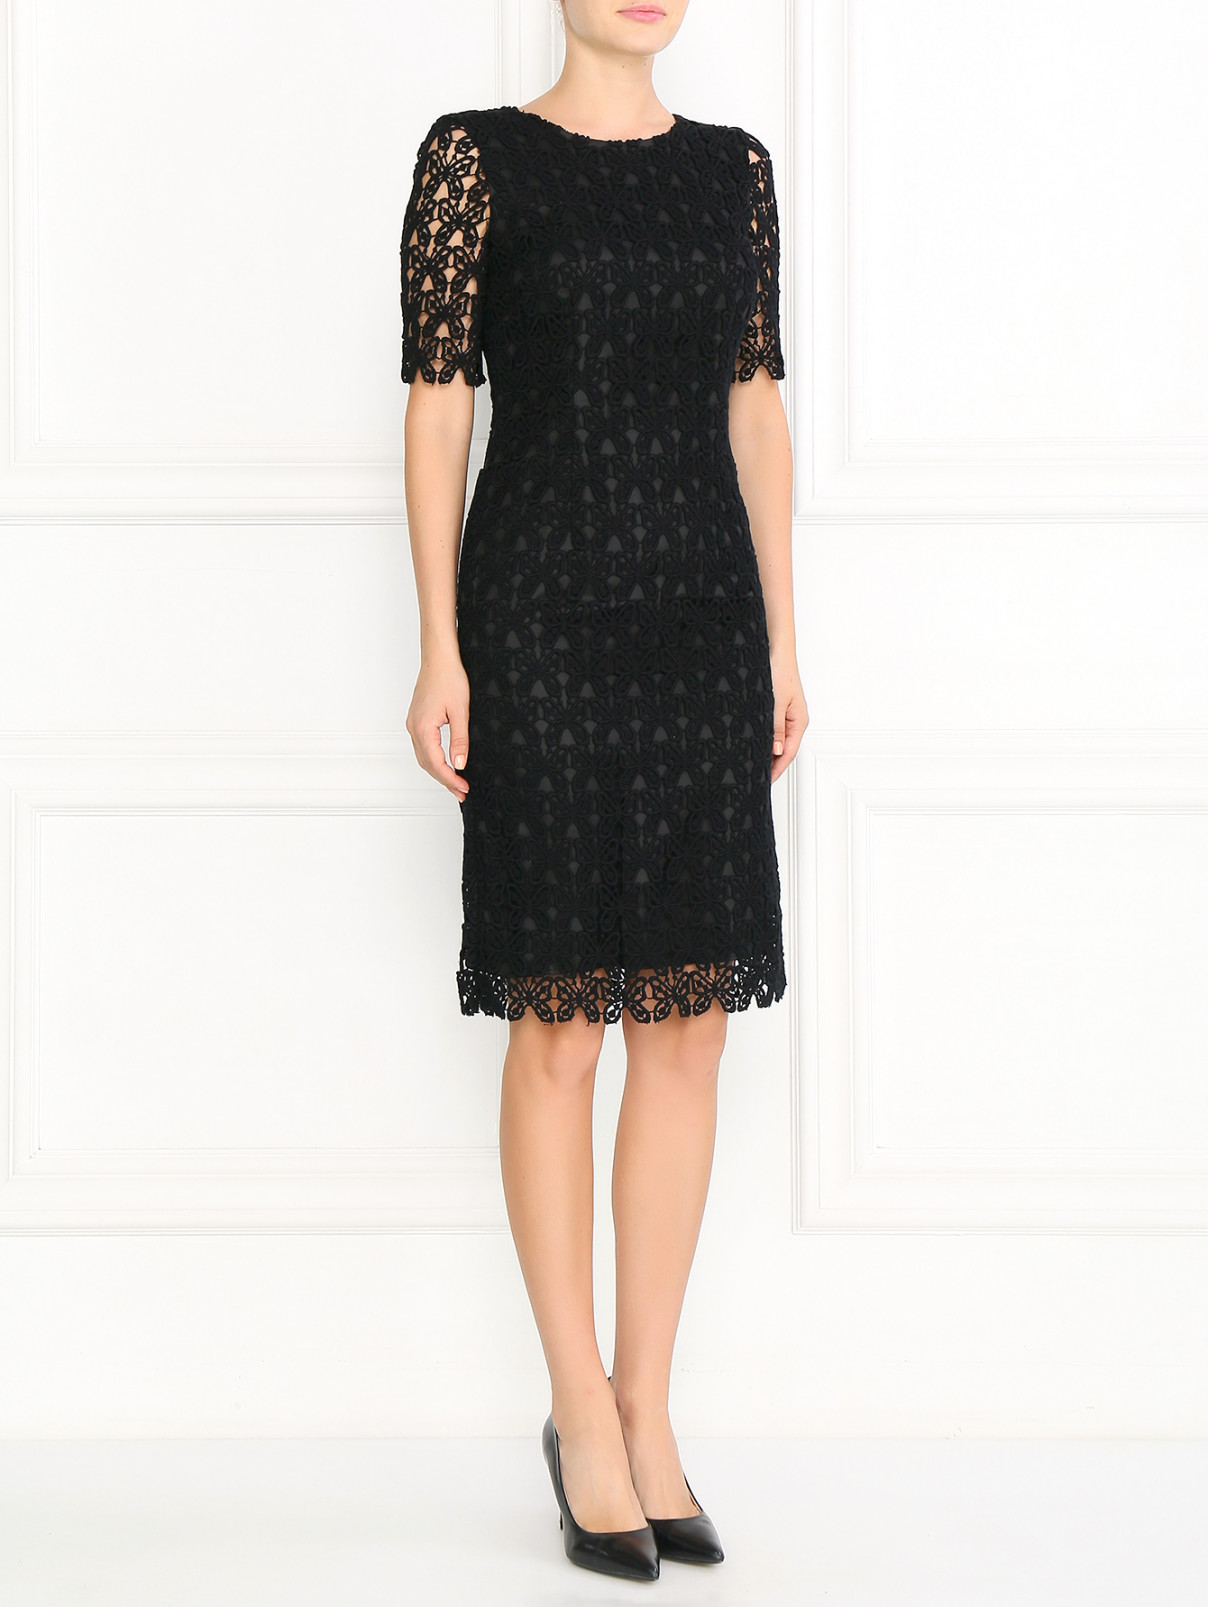 Платье прямого фасона из хлопка с узором из кружева Moschino  –  Модель Общий вид  – Цвет:  Черный